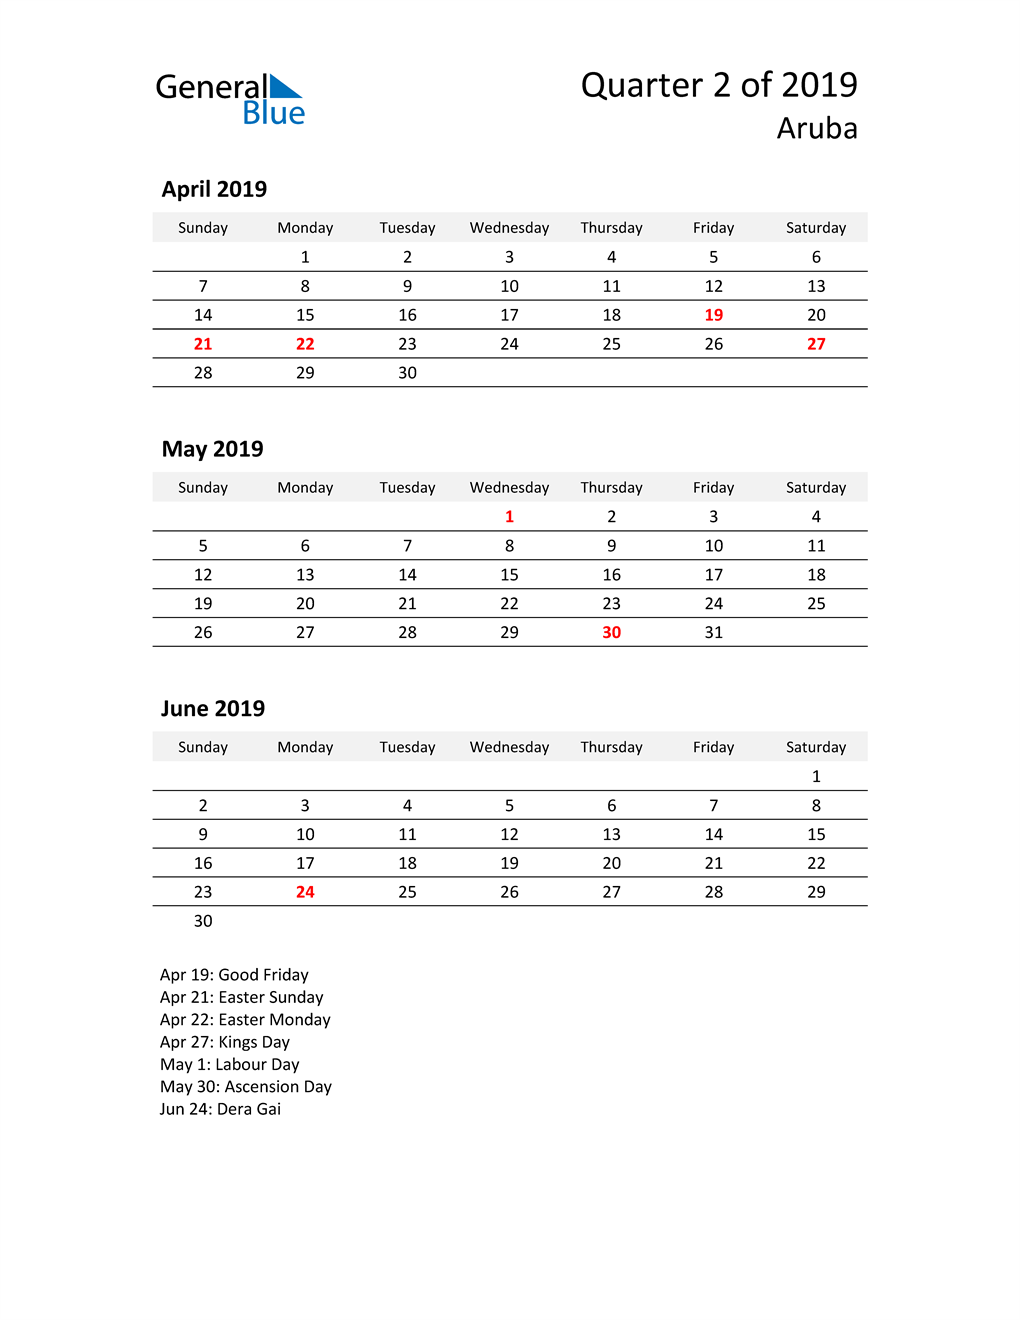  2019 Three-Month Calendar for Aruba